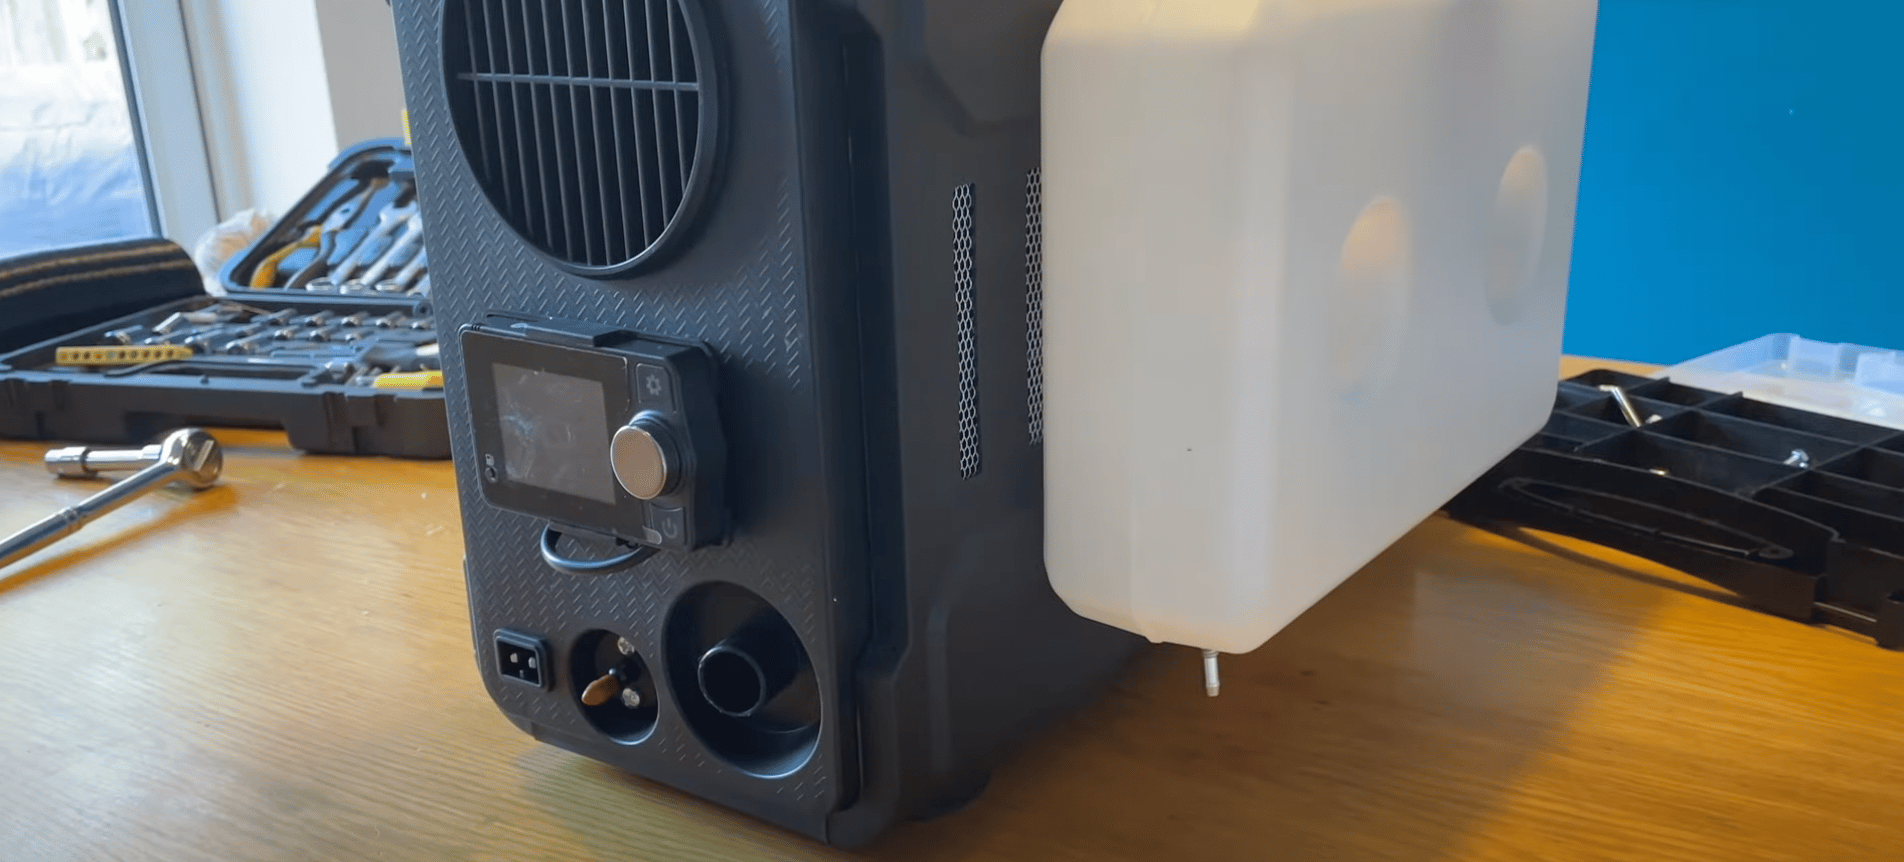 Hcalory HC-A01 diesel air heater